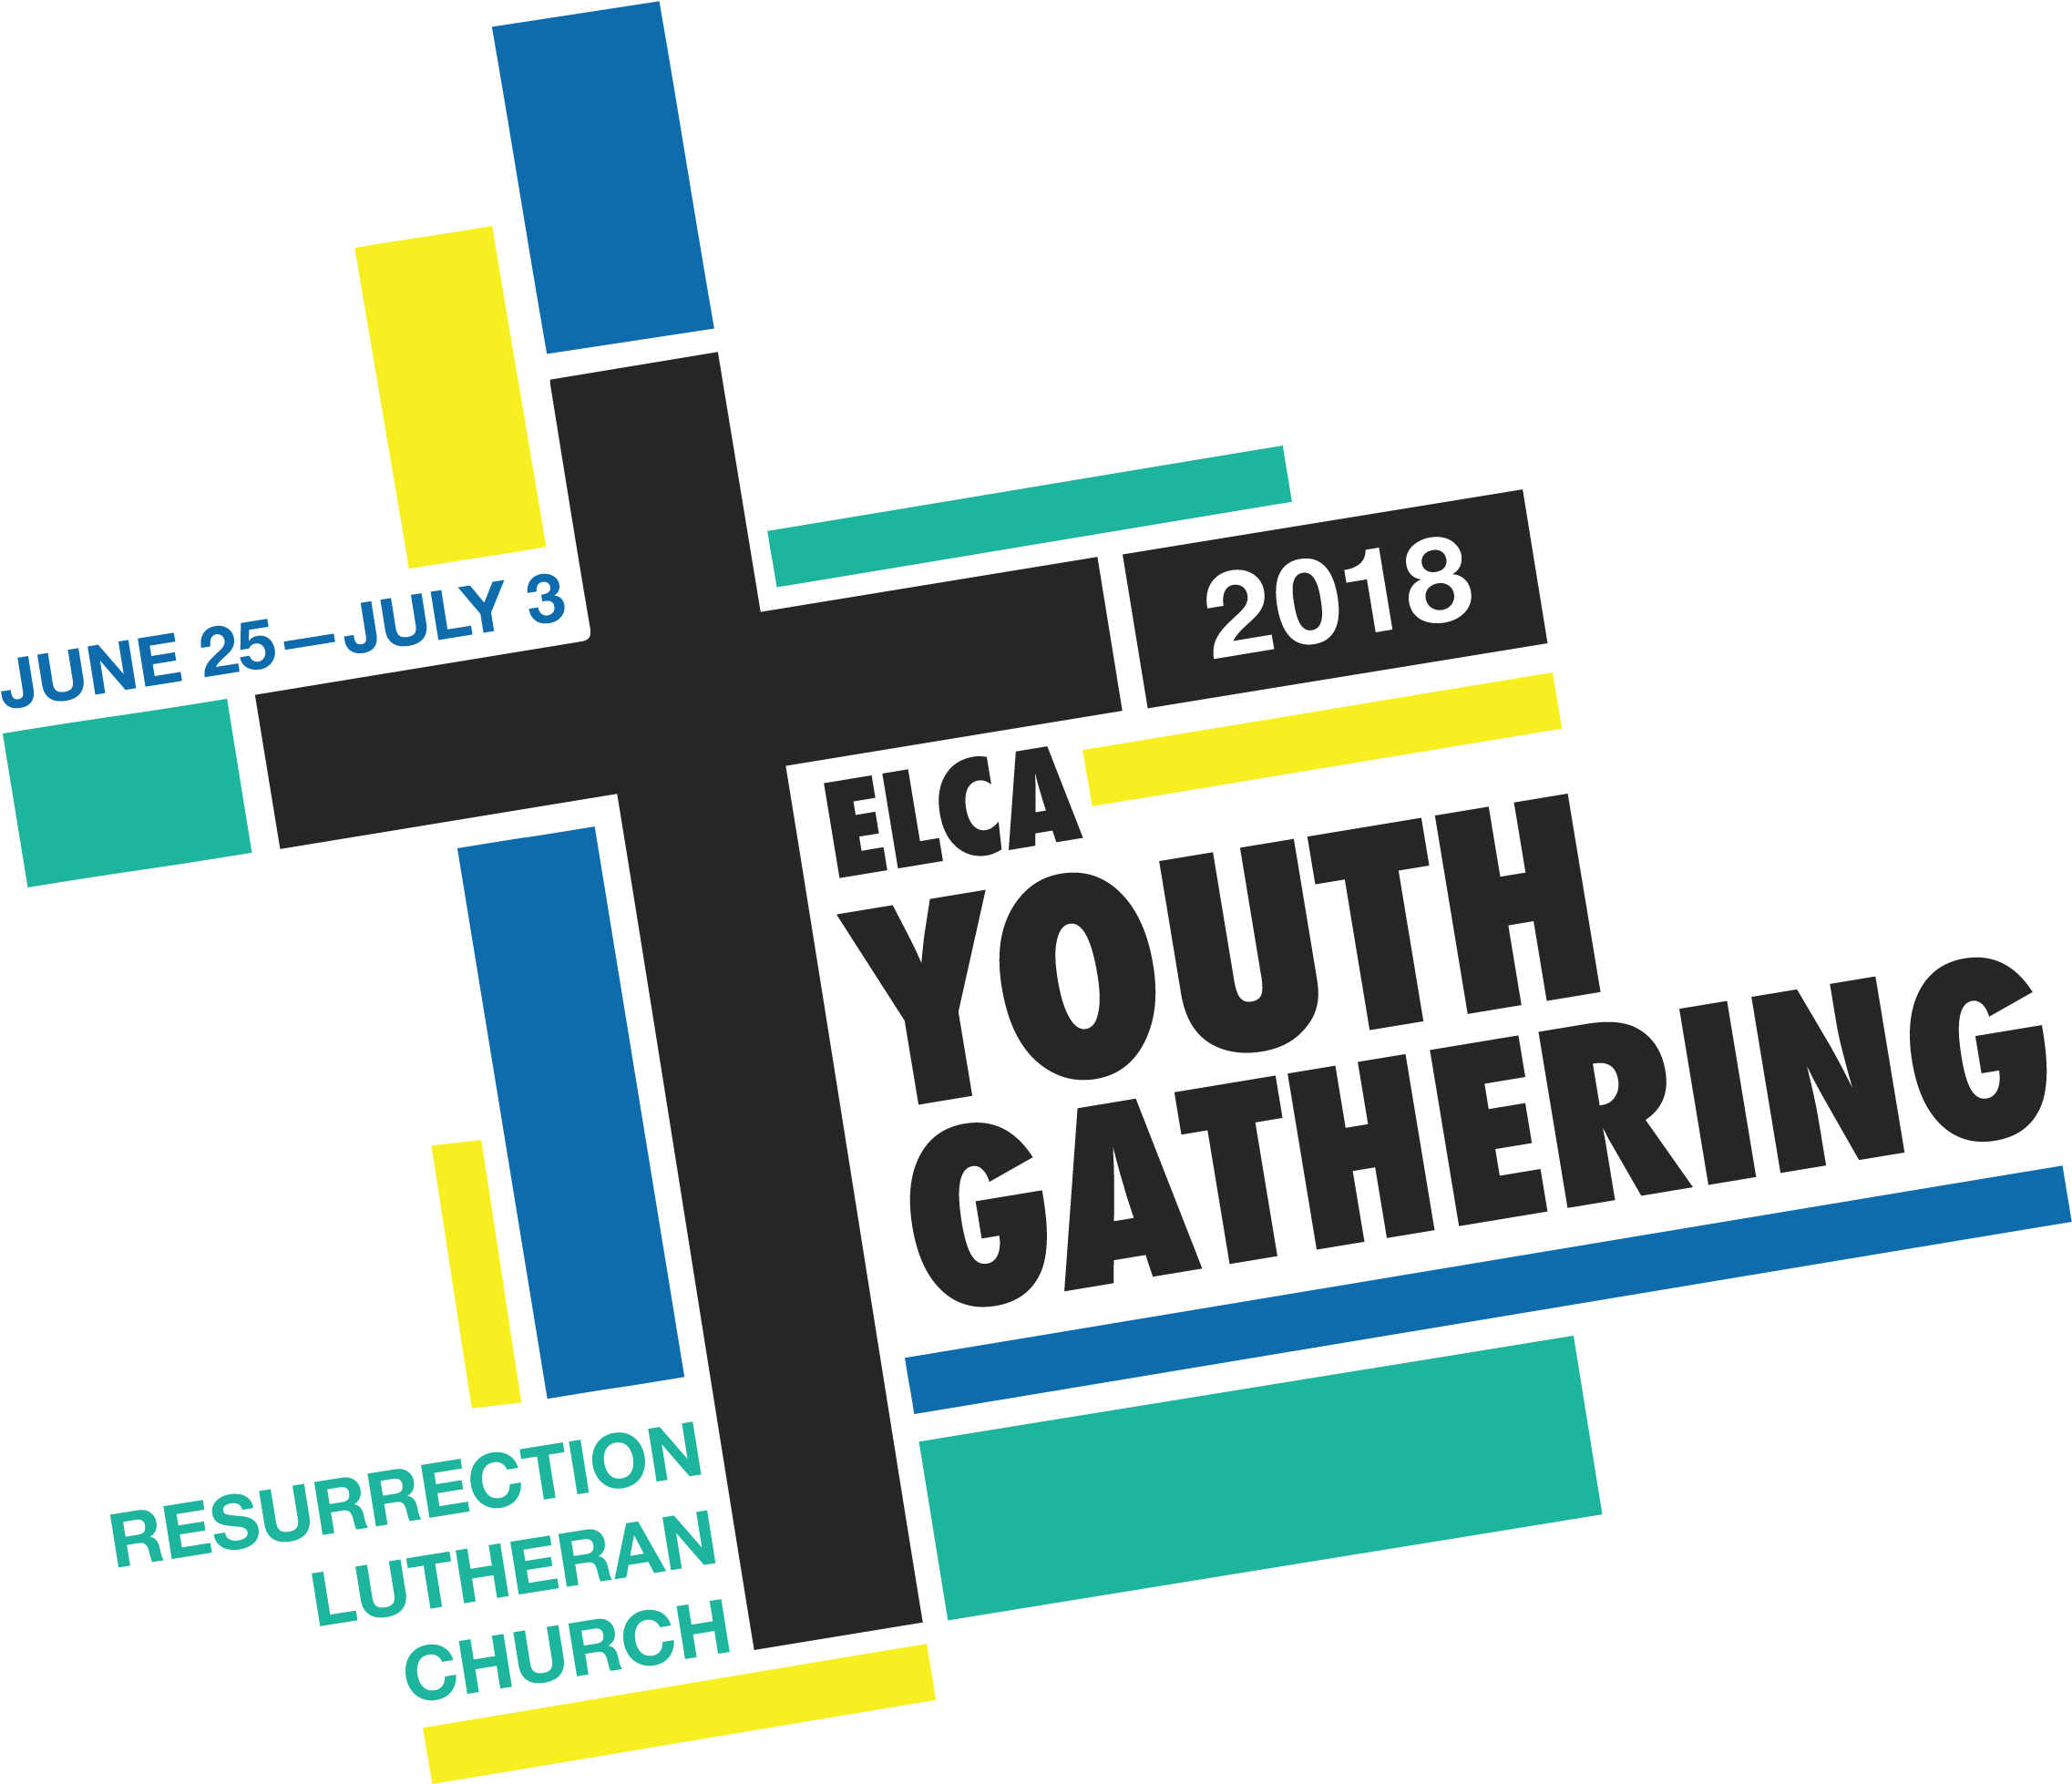 Youth Gathering - Elca Youth Gathering (2550x2110)